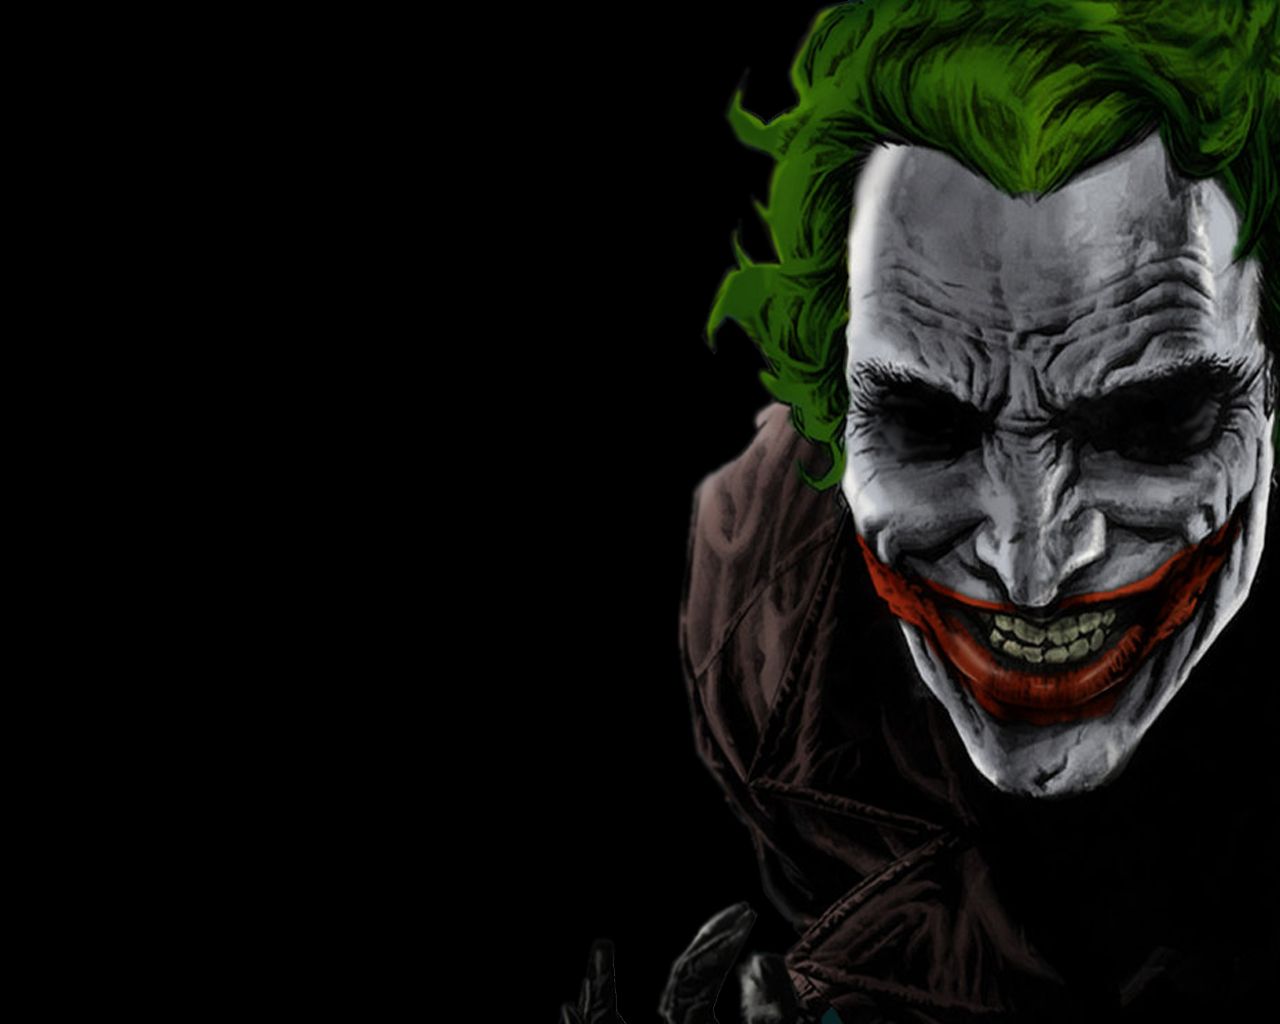 Joker Background. Batman Joker Wallpaper, Crazy Joker Wallpaper and Joker Cartoon Wallpaper